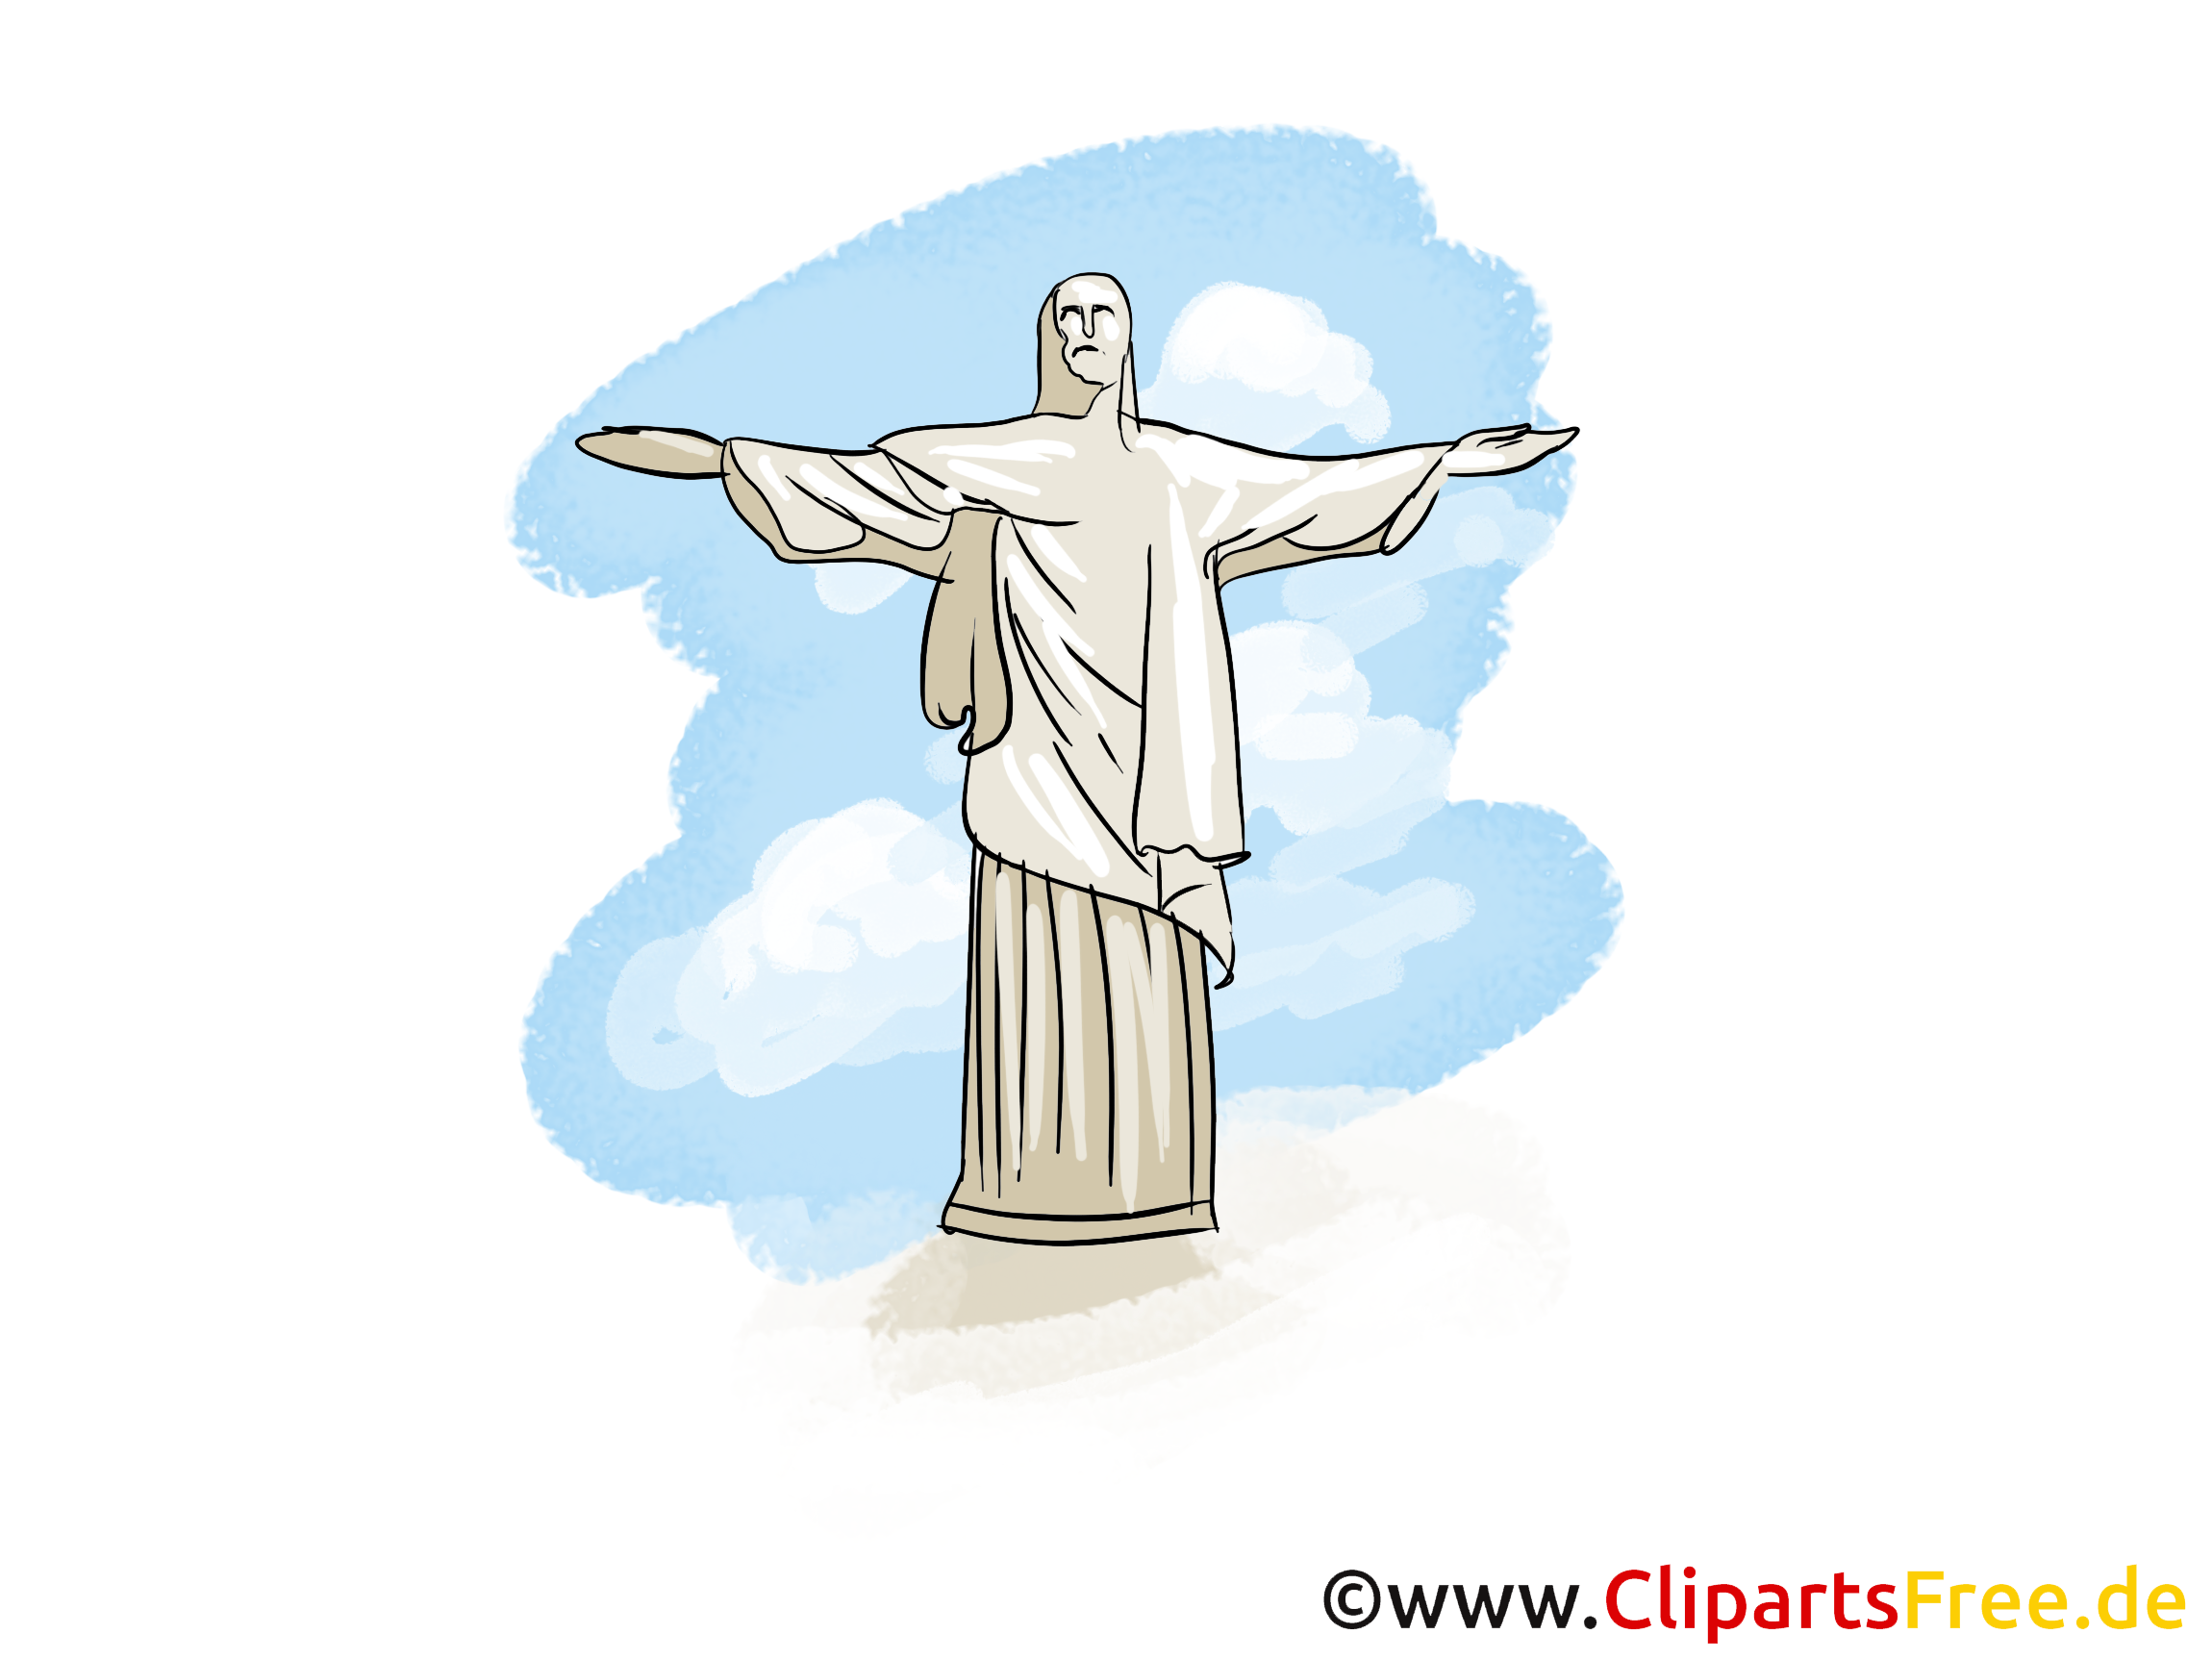 Christ Rédempteur image - Rio de Janeiro cliparts